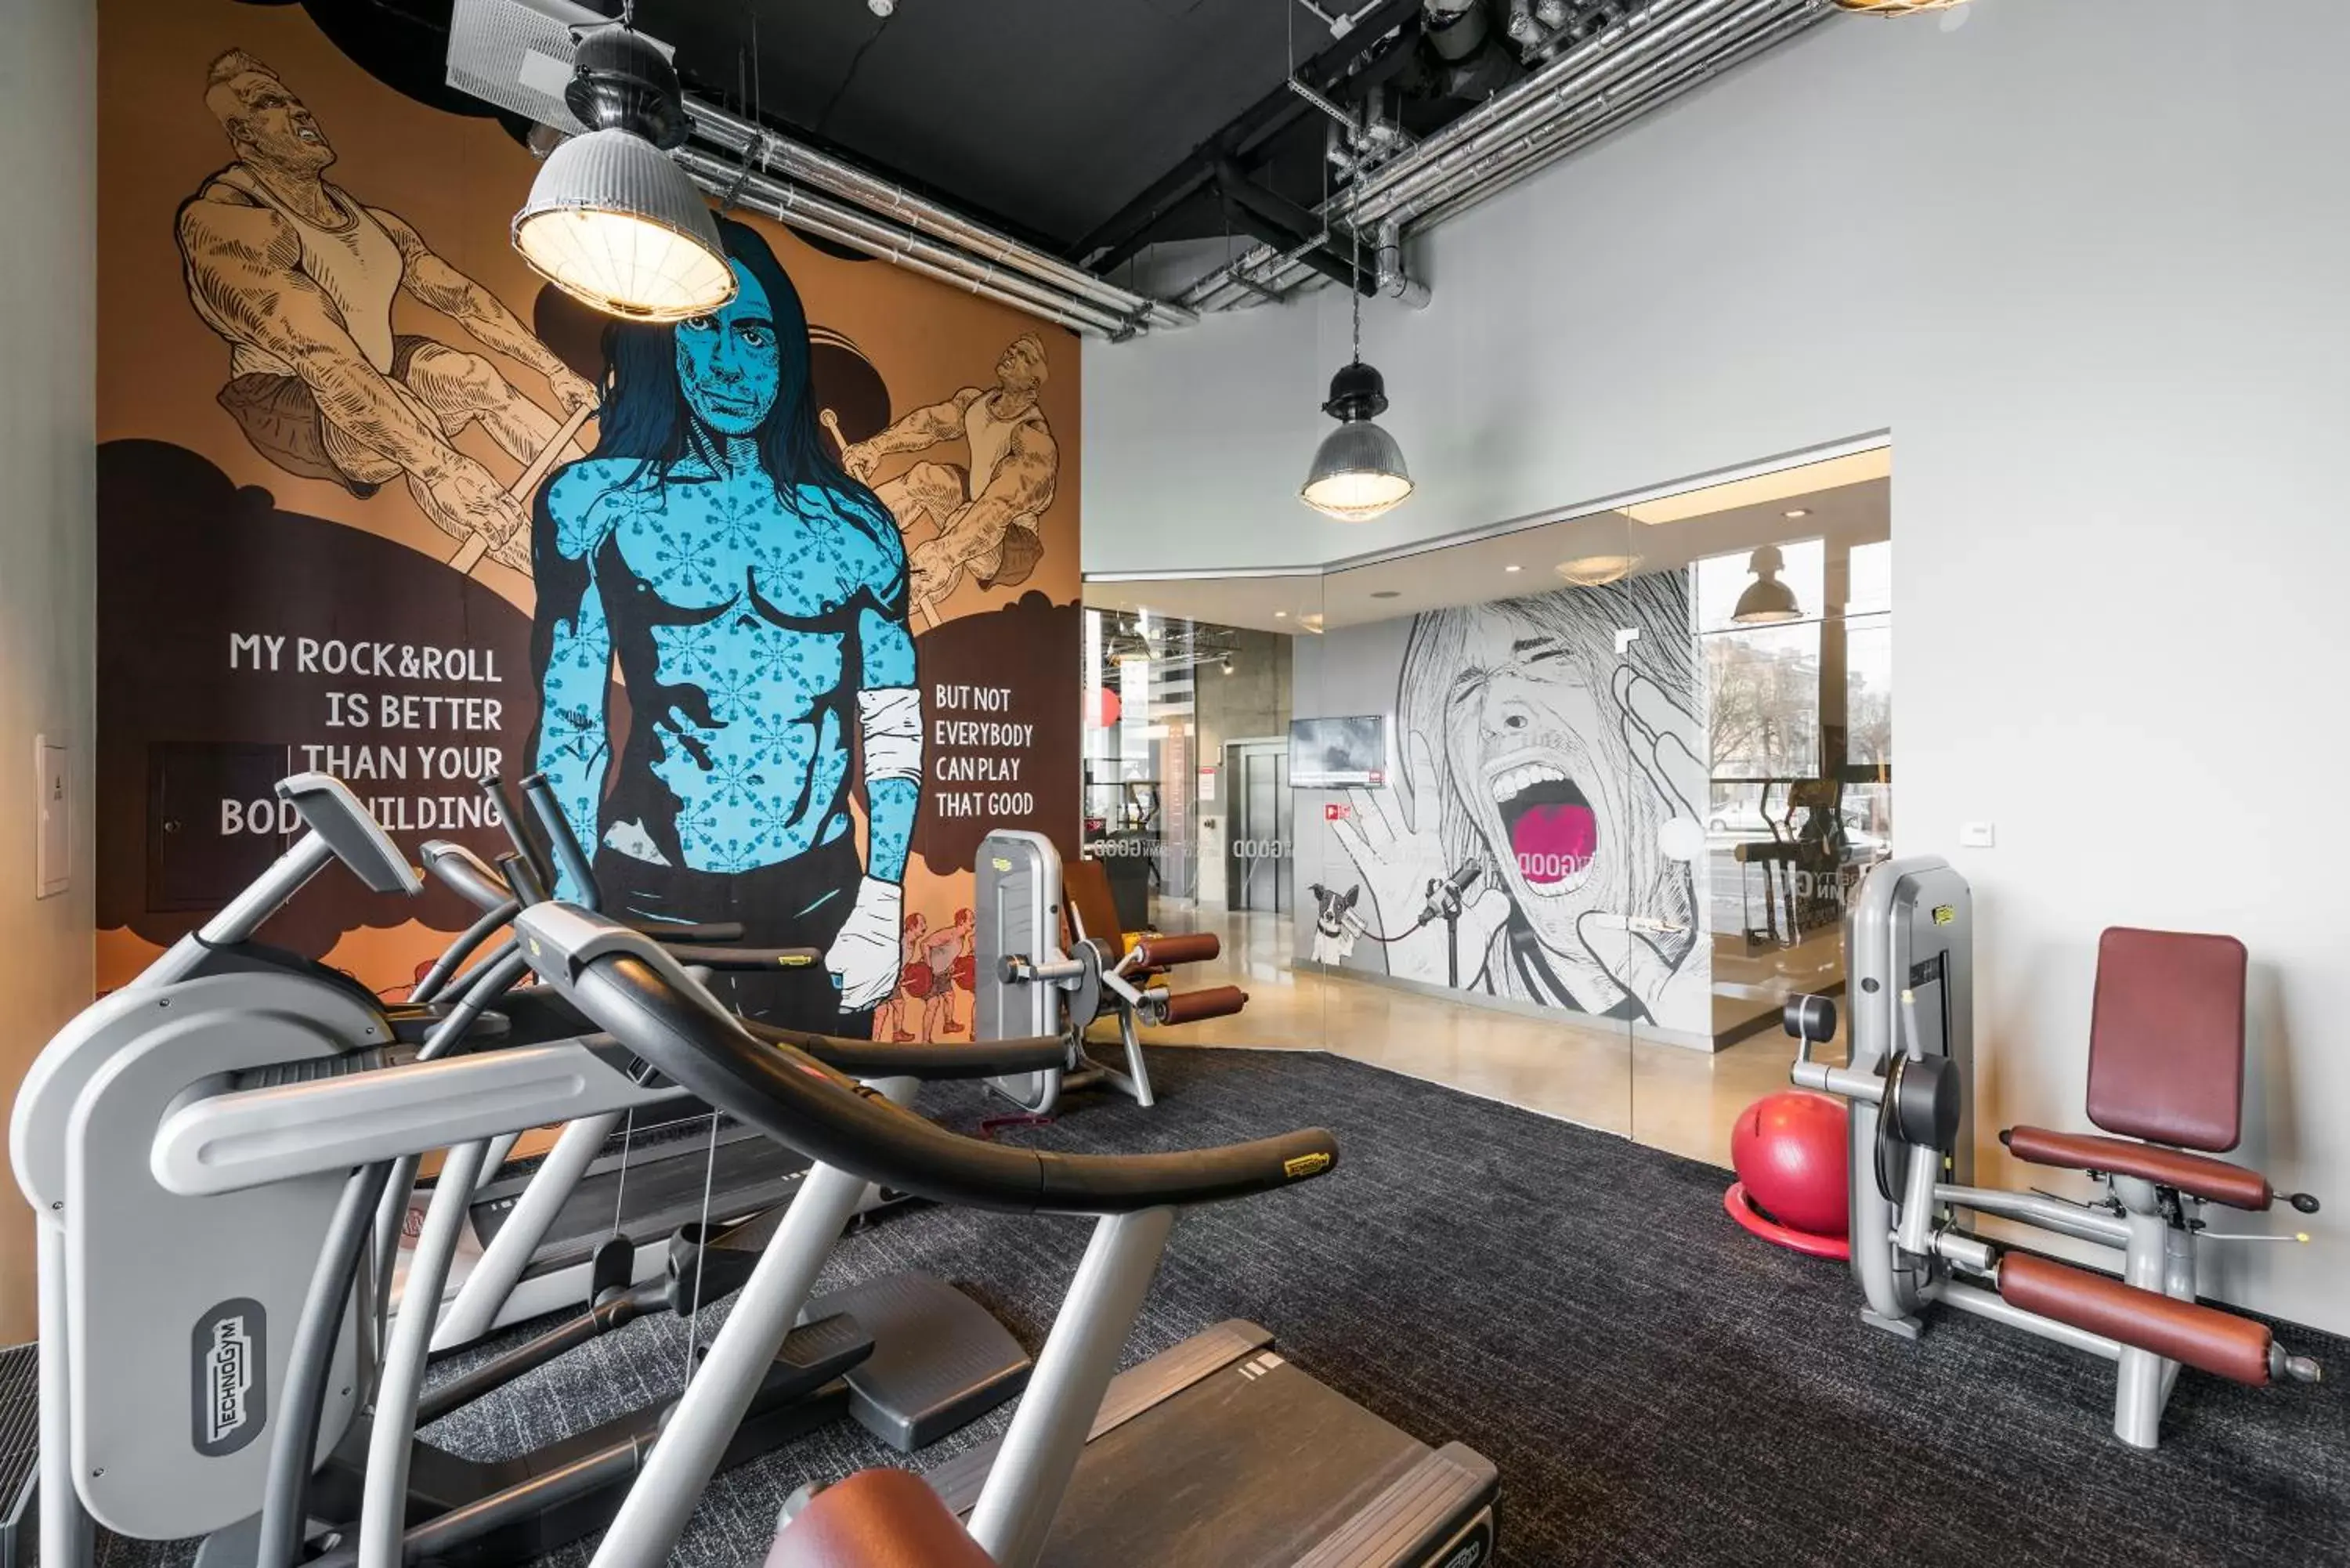 Fitness centre/facilities, Fitness Center/Facilities in Comfort Hotel LT - Rock 'n' Roll Vilnius